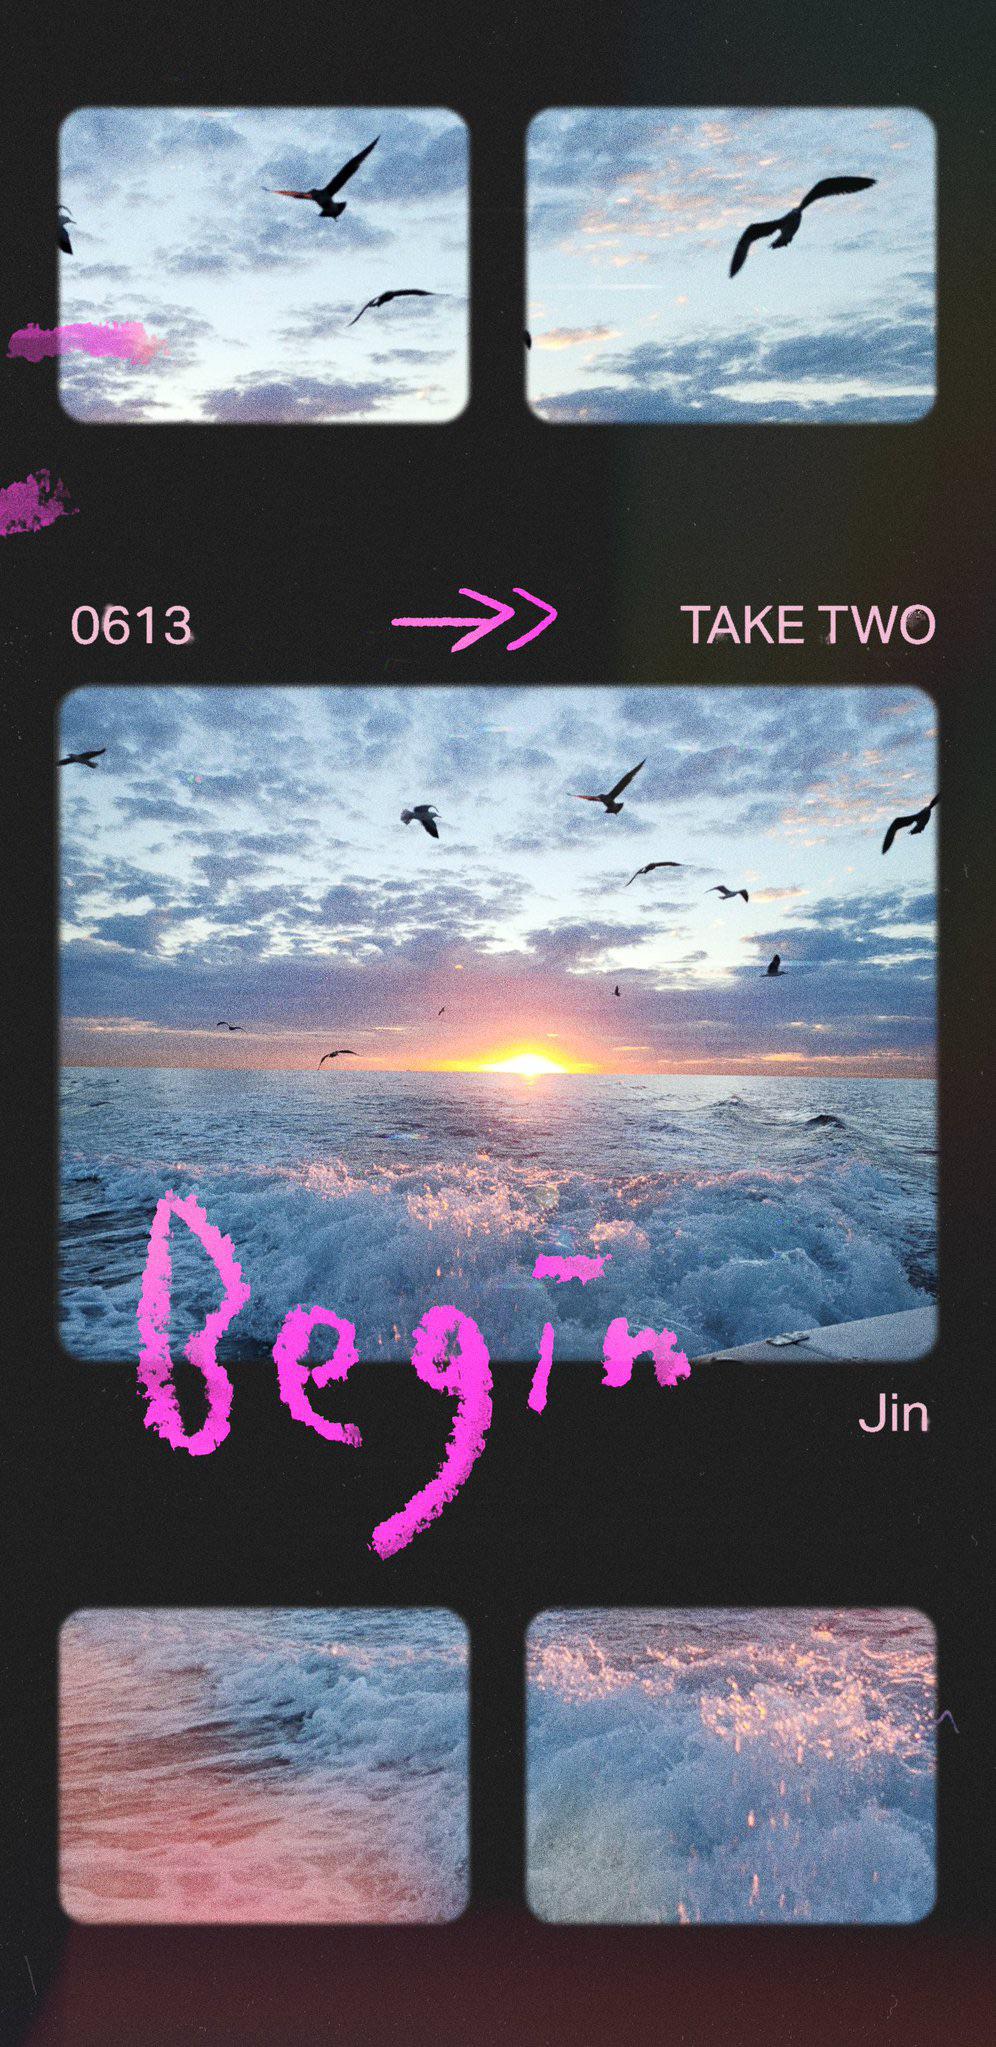 A Piece of ‘Take Two’ - Jin “BEGIN” - 030623